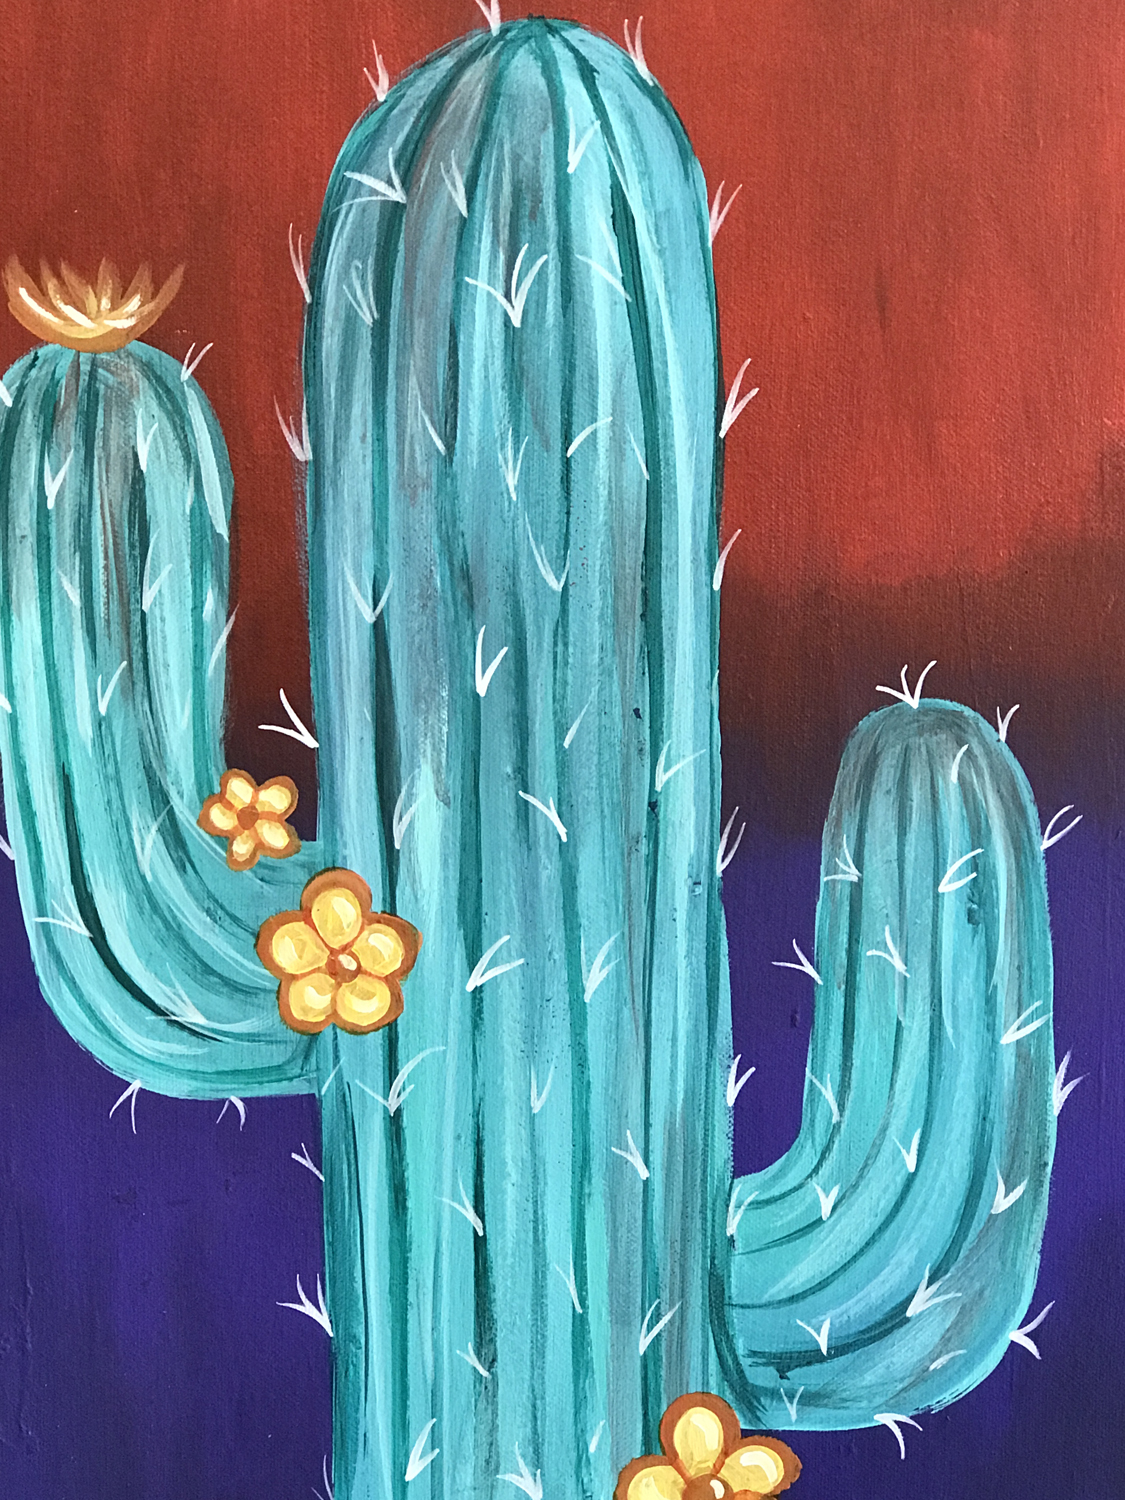 Vino Loco – Saguaro Cactus